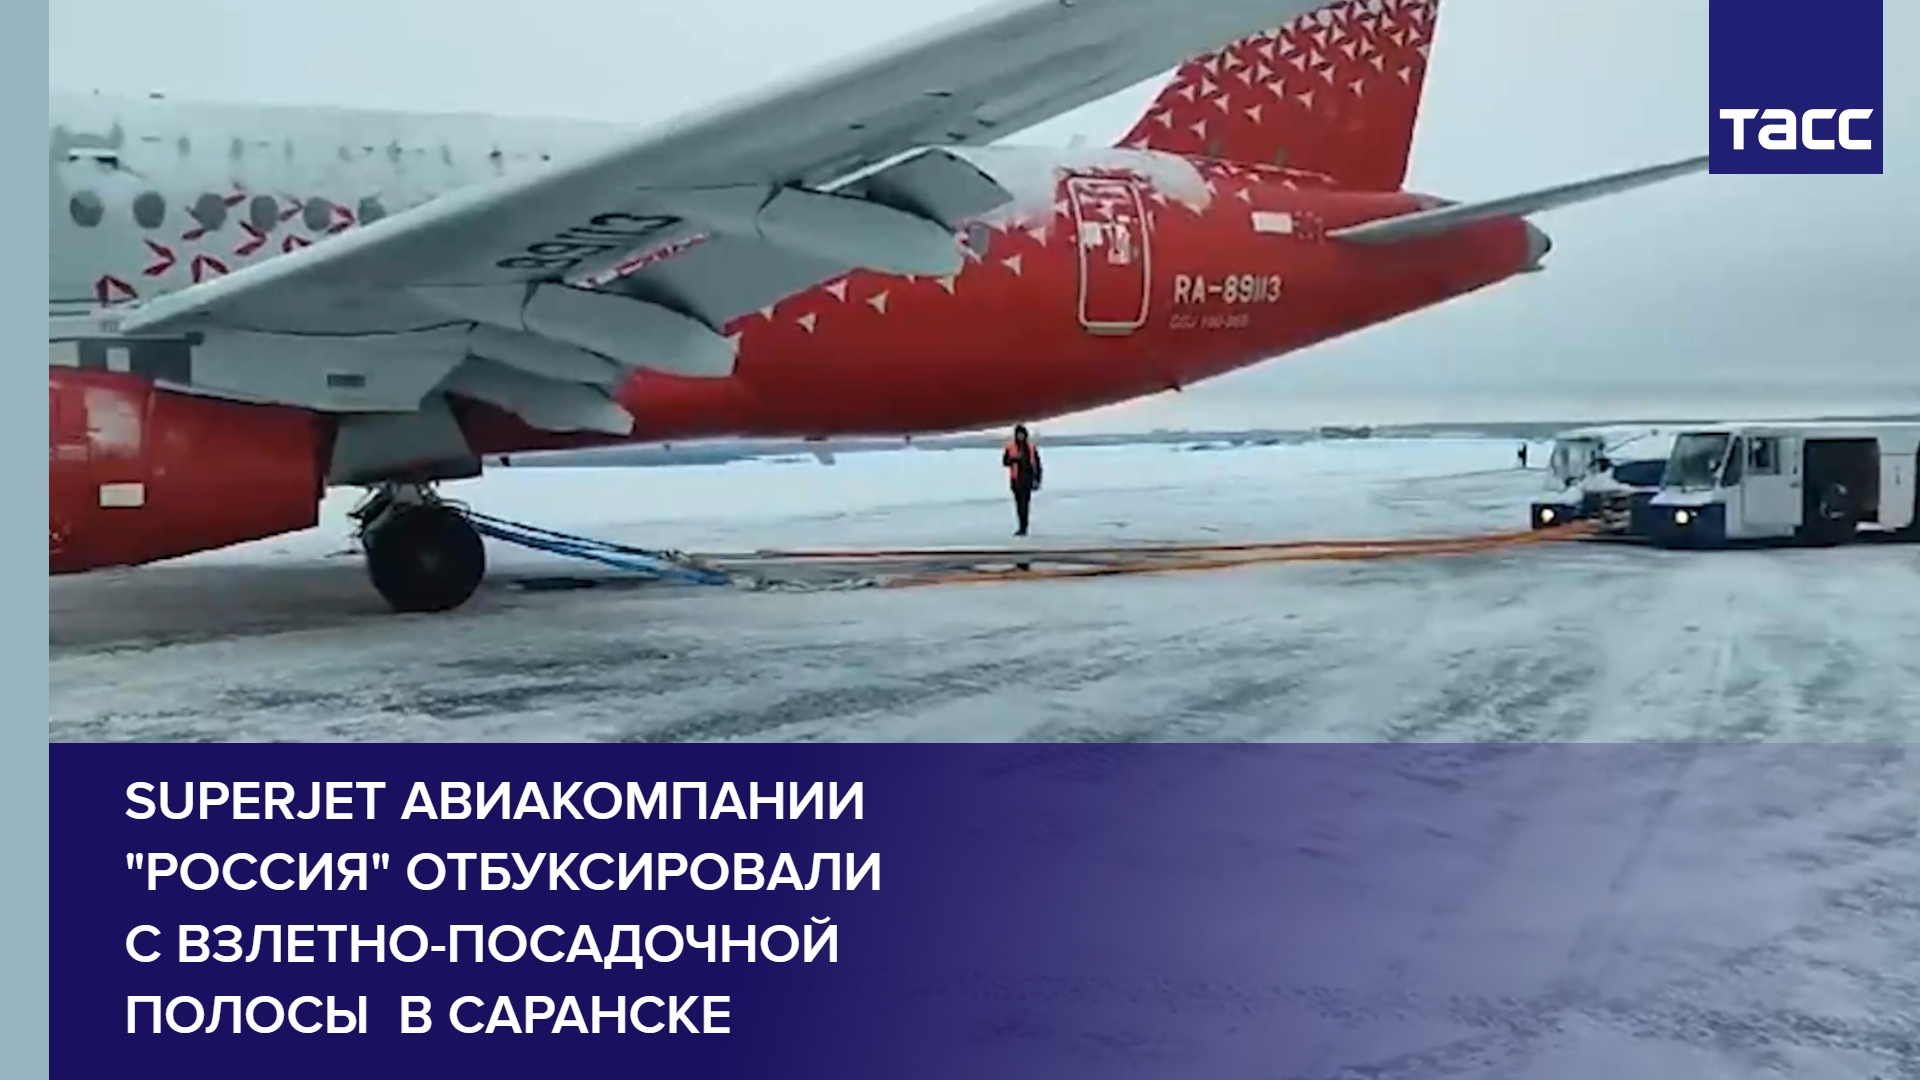 Superjet авиакомпании "Россия" отбуксировали с взлетно-посадочной полосы  в Саранске #shorts